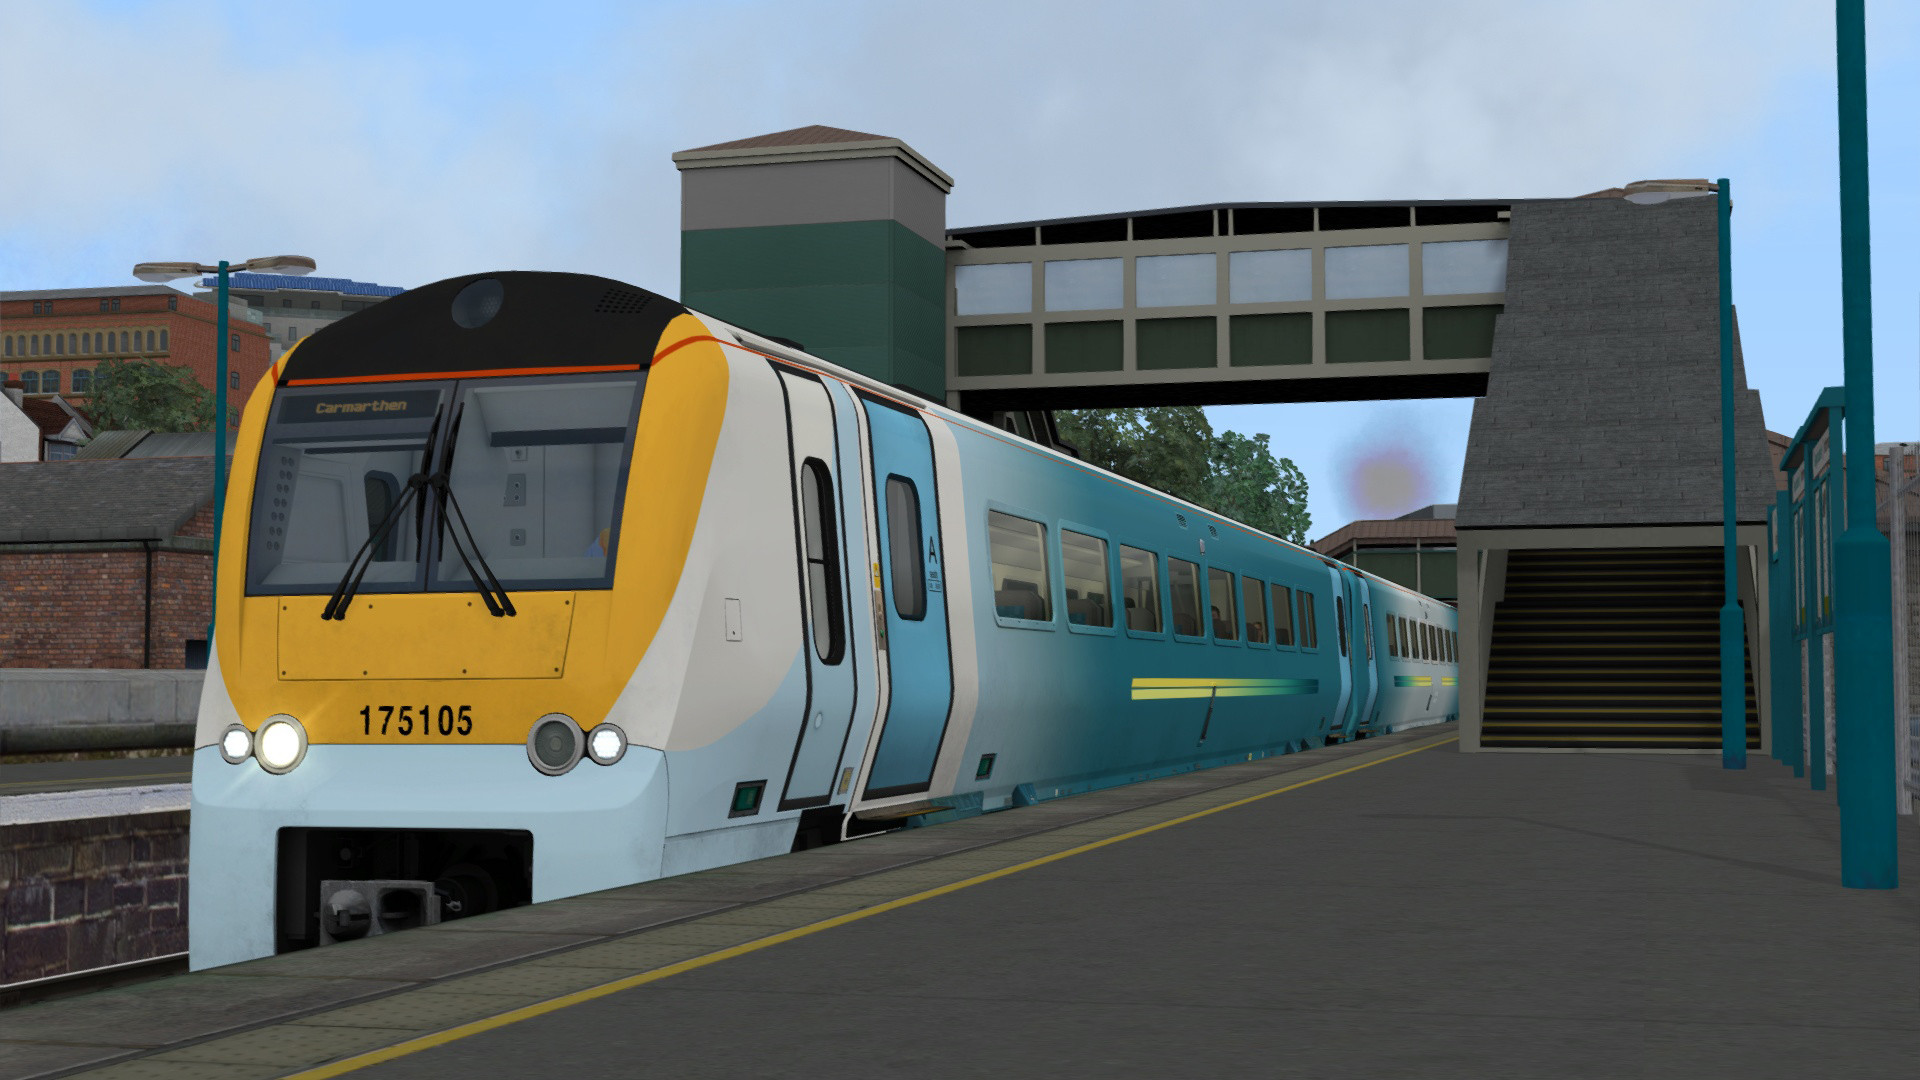 Train Simulator - South Wales Coastal: Bristol - Swansea Route Add-on DLC Steam CD Key 4.17 $